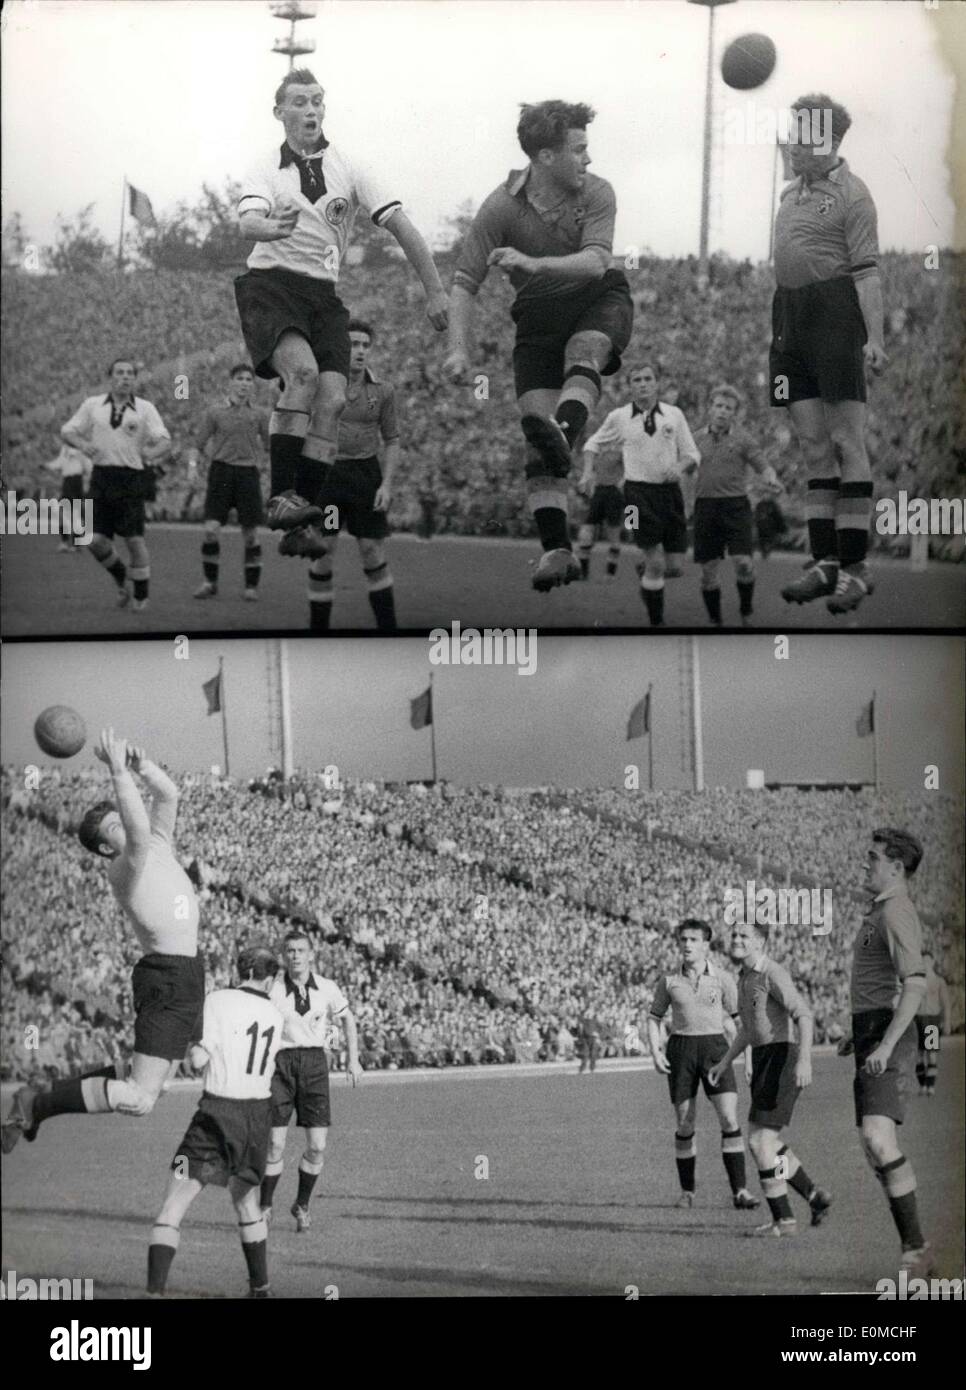 Sep 26, 1954 - Belgien zerstört Fußball Champions 2:0. Im Heysel-Stadion in Brüssel, die deutsche Nationalmannschaft der belgischen Mannschaft ausgesetzt war, verlor 2:0. Immer wieder versuchte der deutschen '' Sturm '' zu durchbrechen die belgische Verteidigung um zu versuchen aufzuholen. Die herausragende belgischen Verteidigung ließ nicht Rahn (im Bild oben-links) bis zum Ziel. Die belgischen Ersatz-Torwart, der in der ersten Hälfte für Gernaer auf der Rückseite subbed war, erwies sich als solide. Unsere untere Bild zeigt ihn Stanzen einen scharfen Schuss über das Tor. Stockfoto